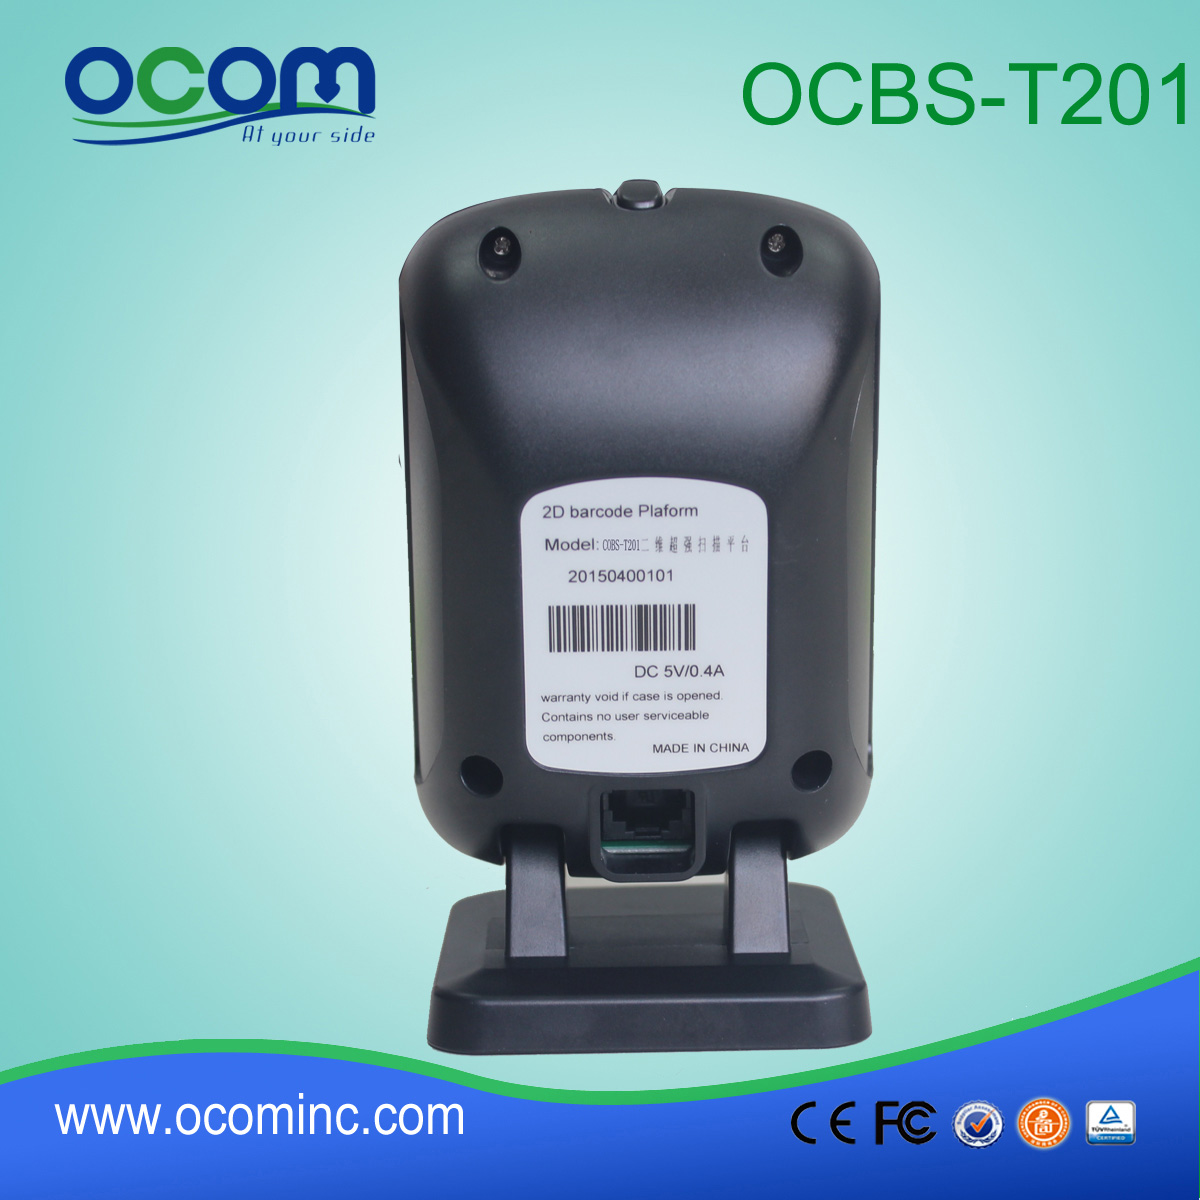 一维二维全方位的影像条码扫描器 OCBS-T201